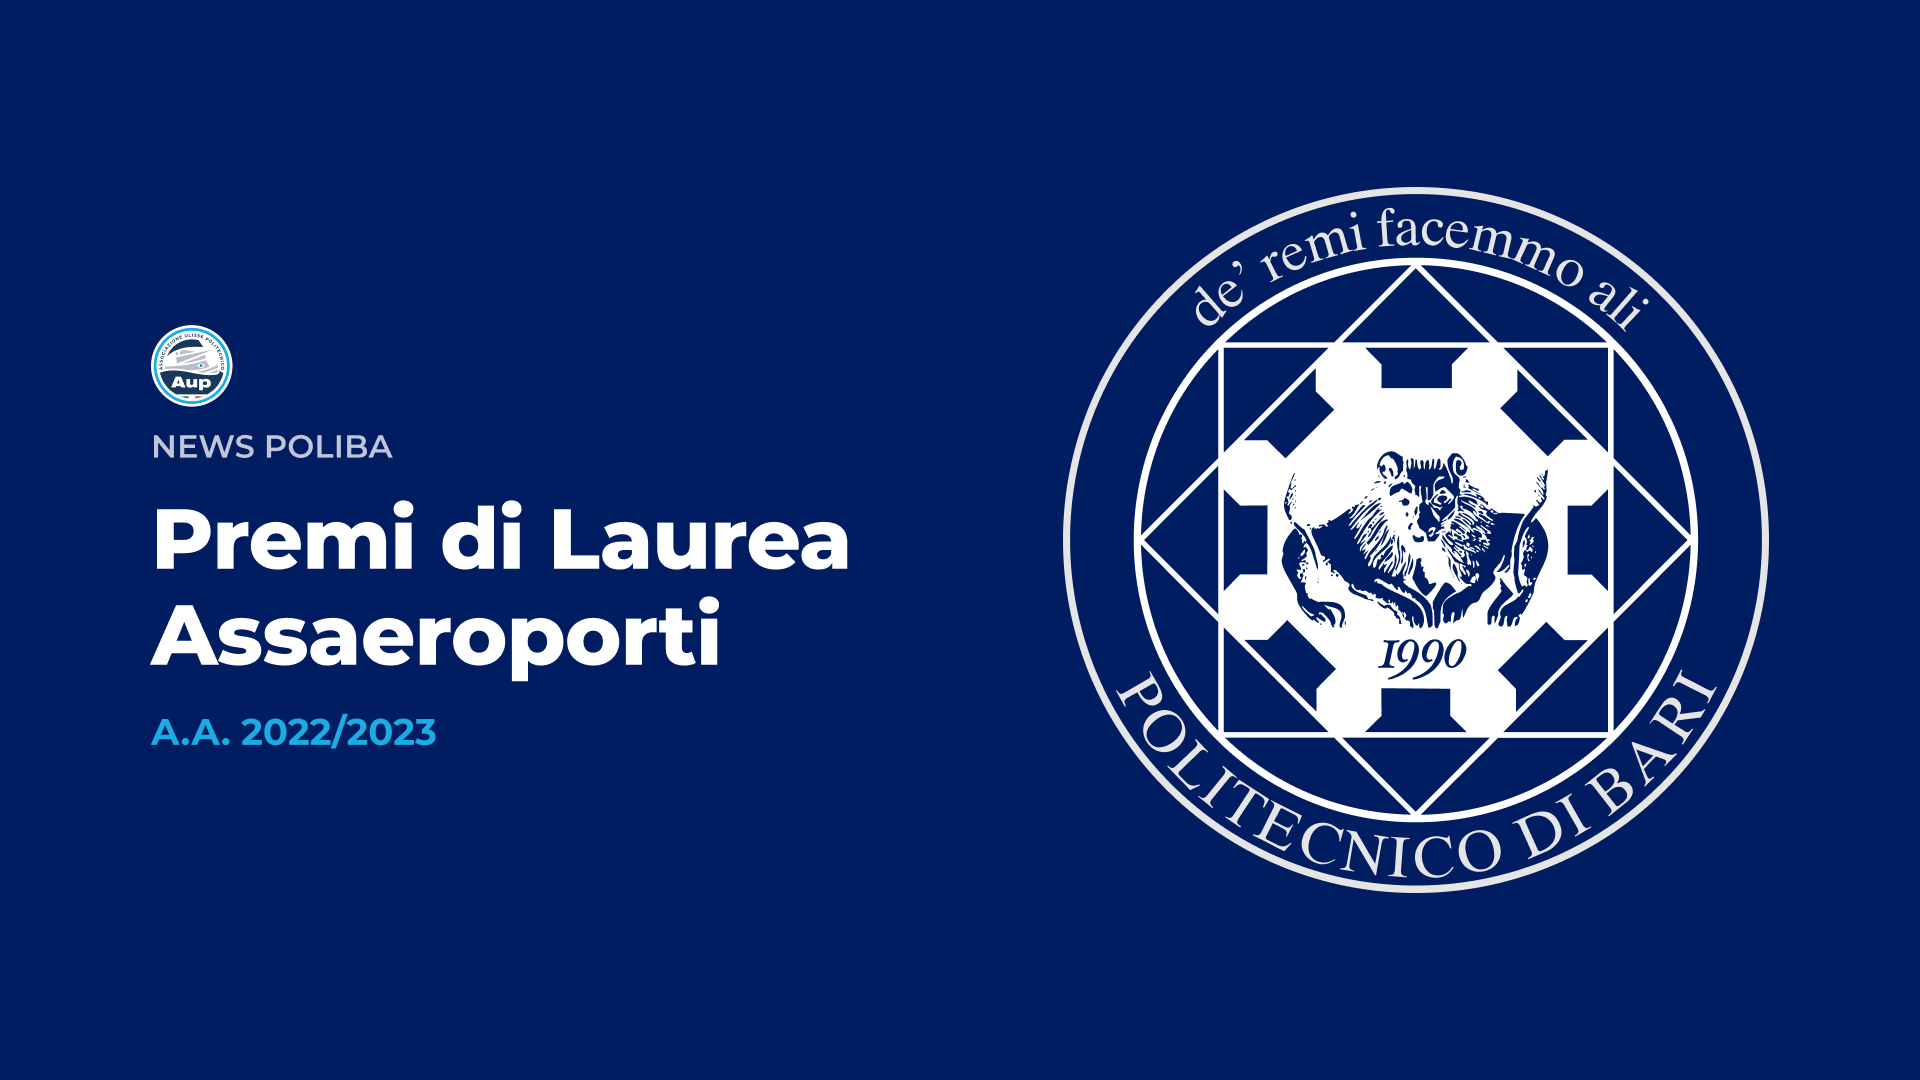 Premi di Laurea - Assaeroporti - A.A. 2022/2023